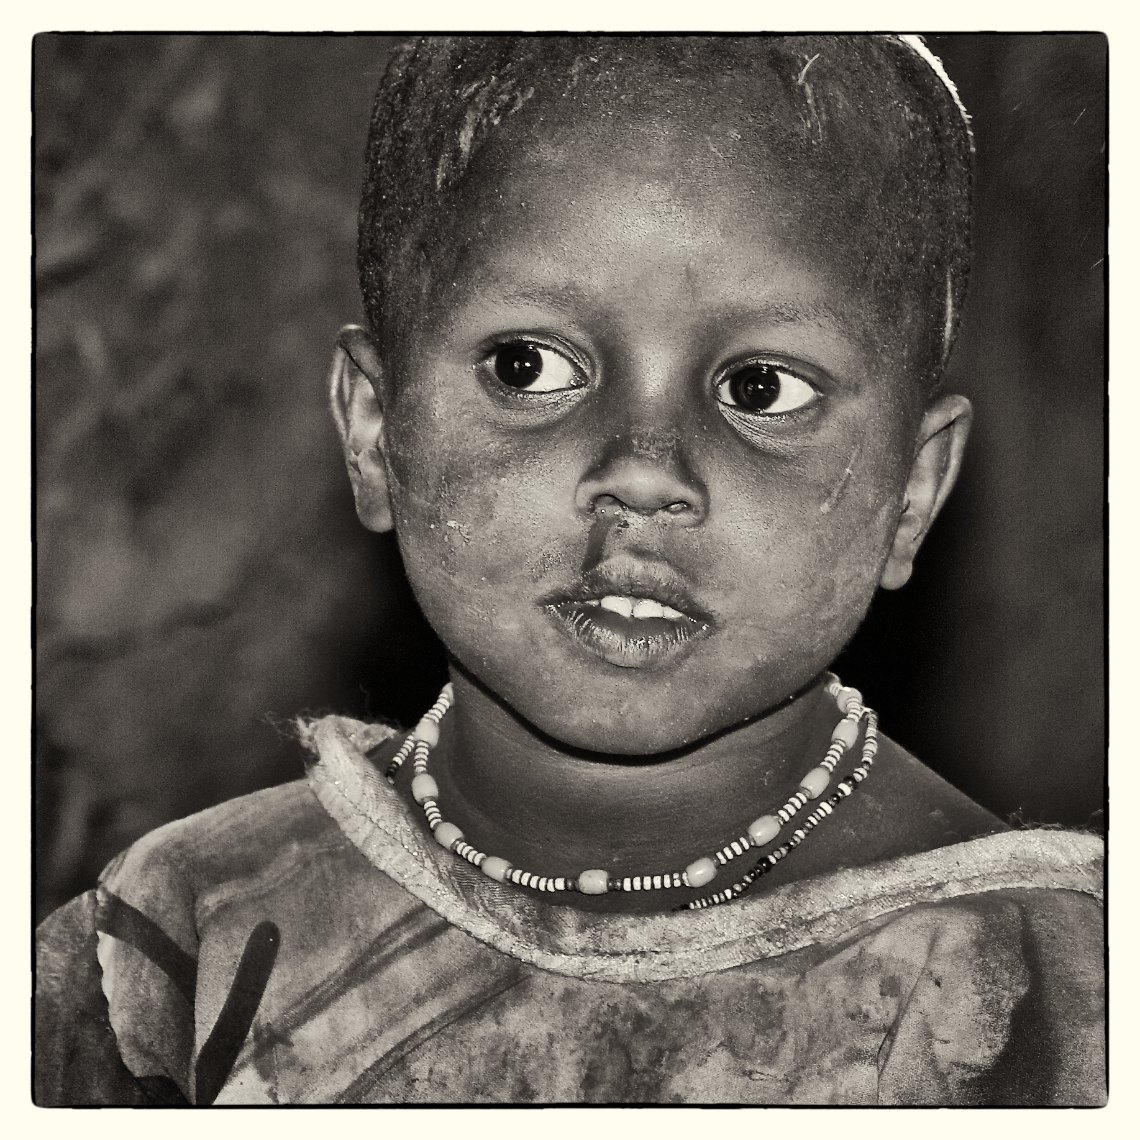 Kenya Amboseli Massai portrait child